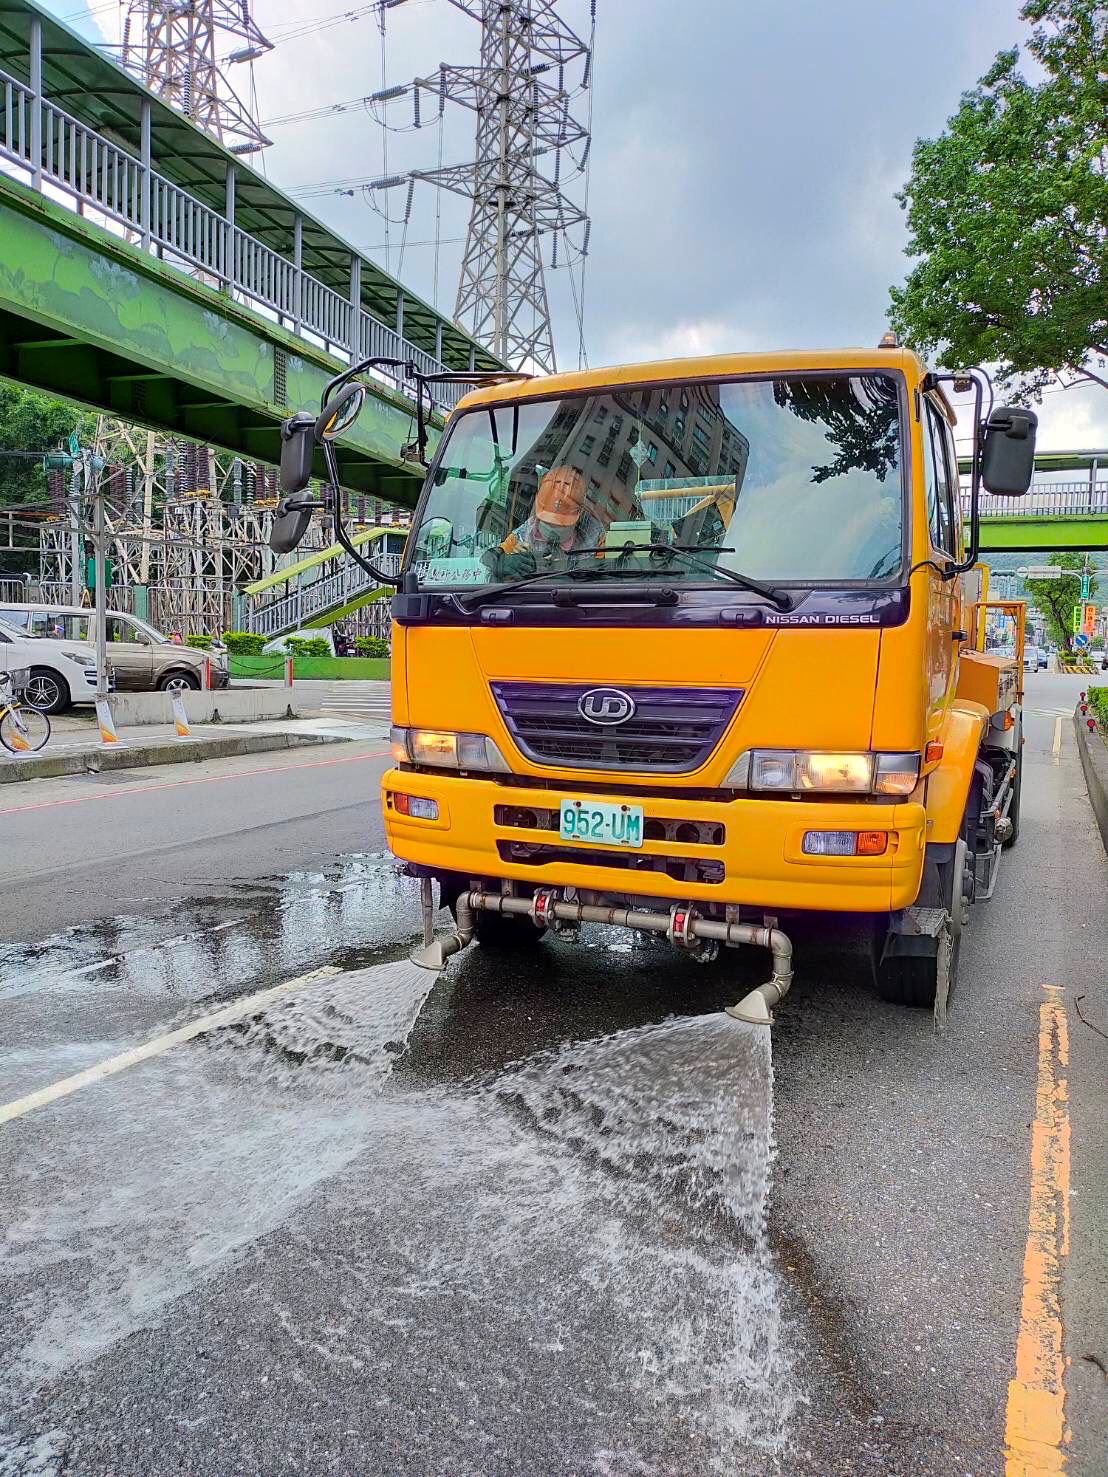 環保局出動洗街車至樹林區進行路面灑水降溫之情形